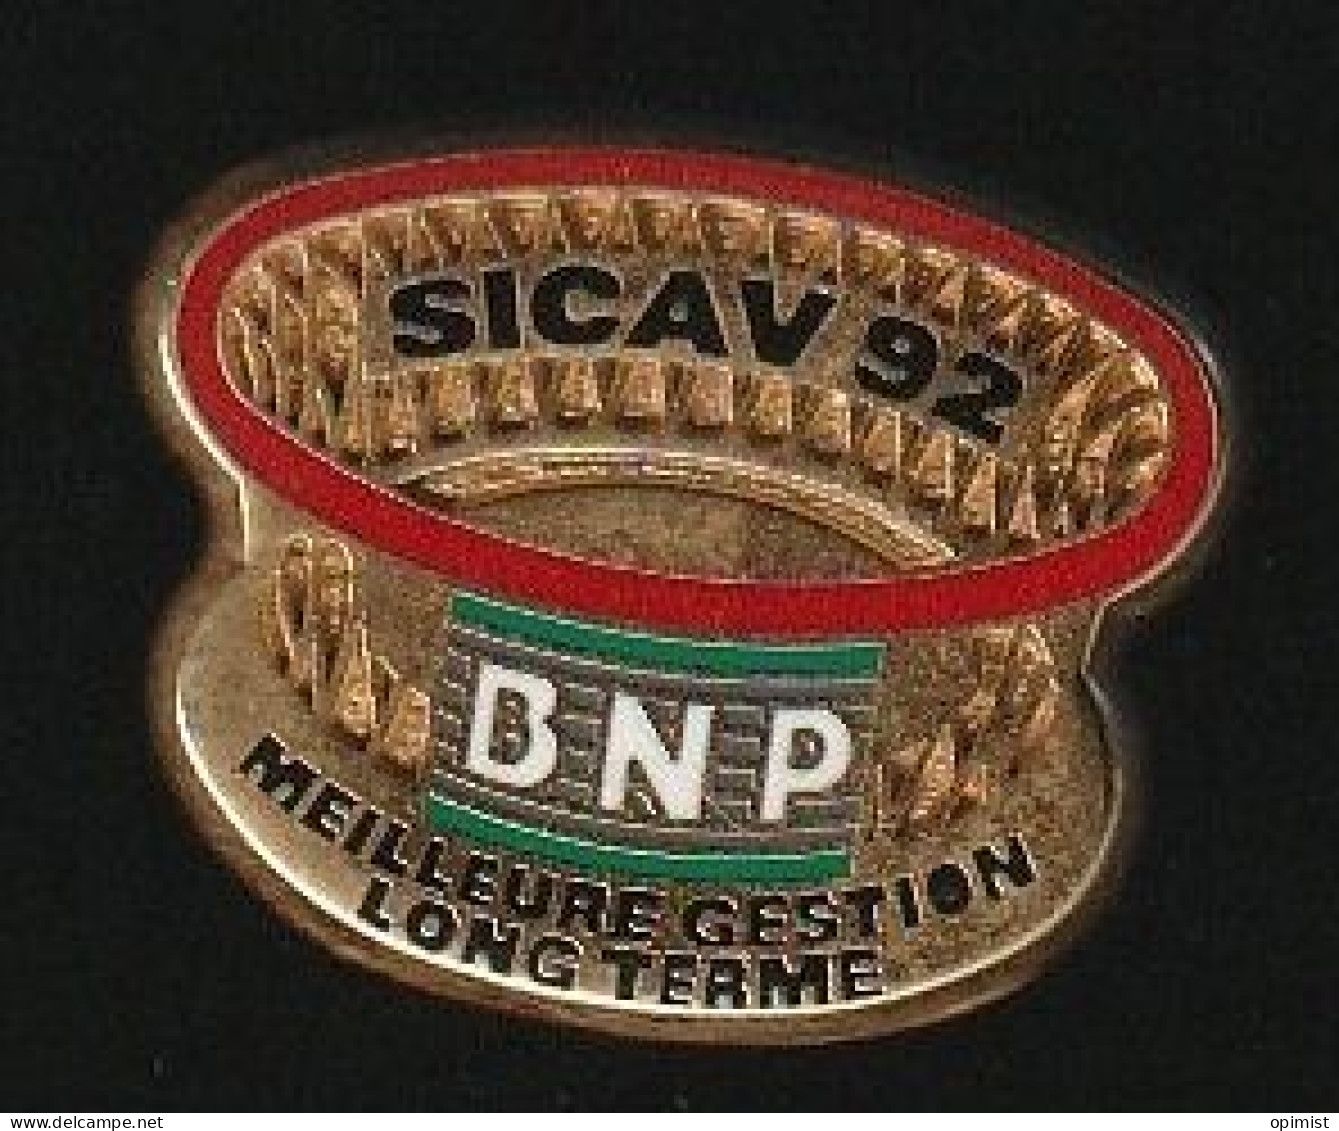 77545-Pin's. Sicav 92.Banque BNP.y.signé DF-DGC.Arthus Bertrand.Paris. - Arthus Bertrand